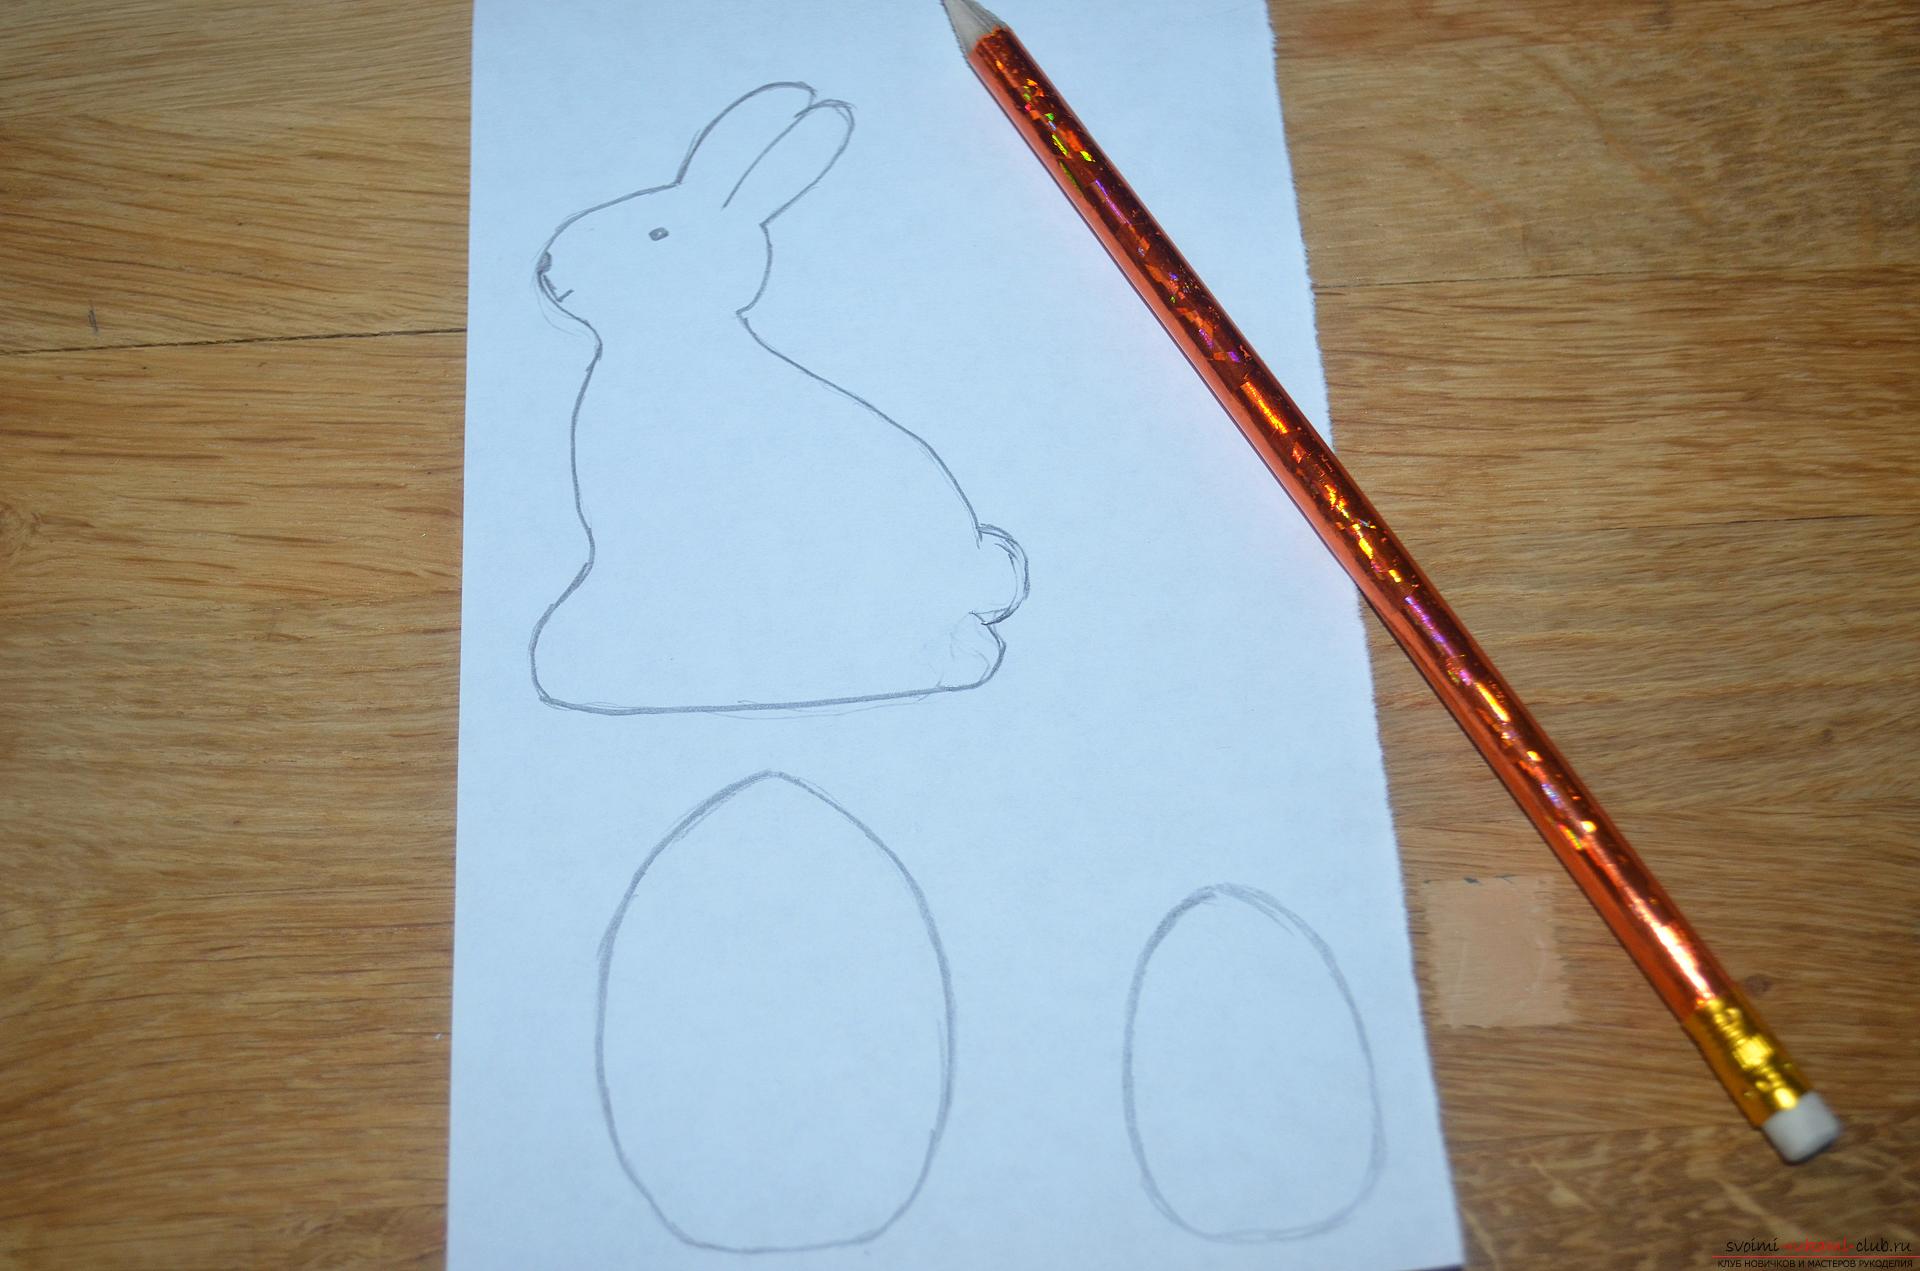 Этот мастер-класс научит как сделать пасхального кролика из фетра своими руками.. Фото №2